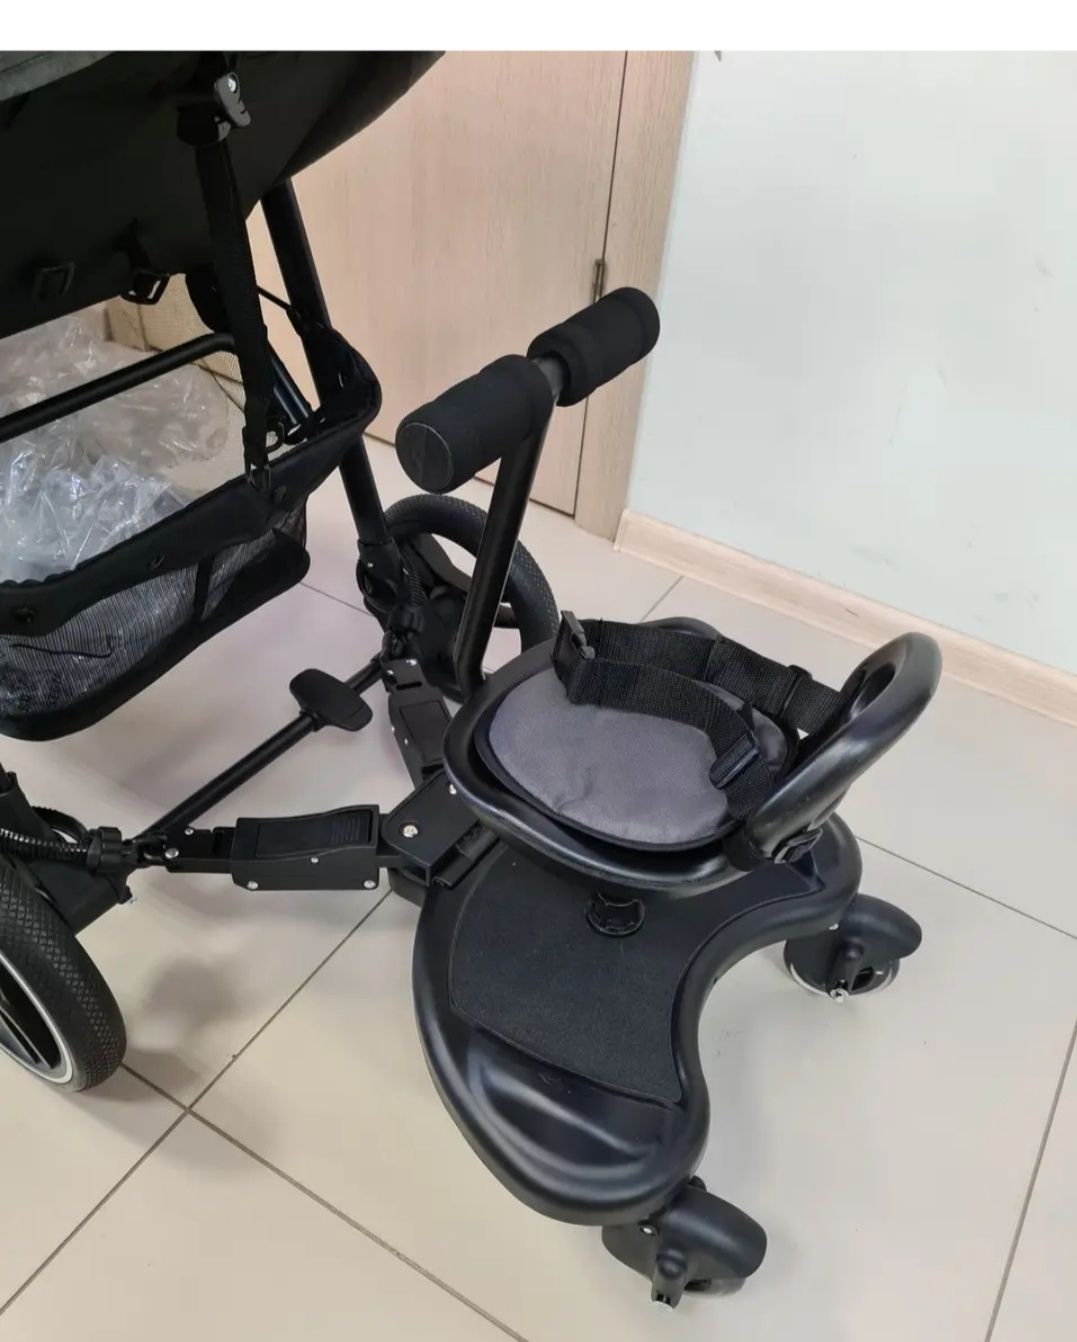 Підніжка  універсальна крісло  Carrello для другої дитини.